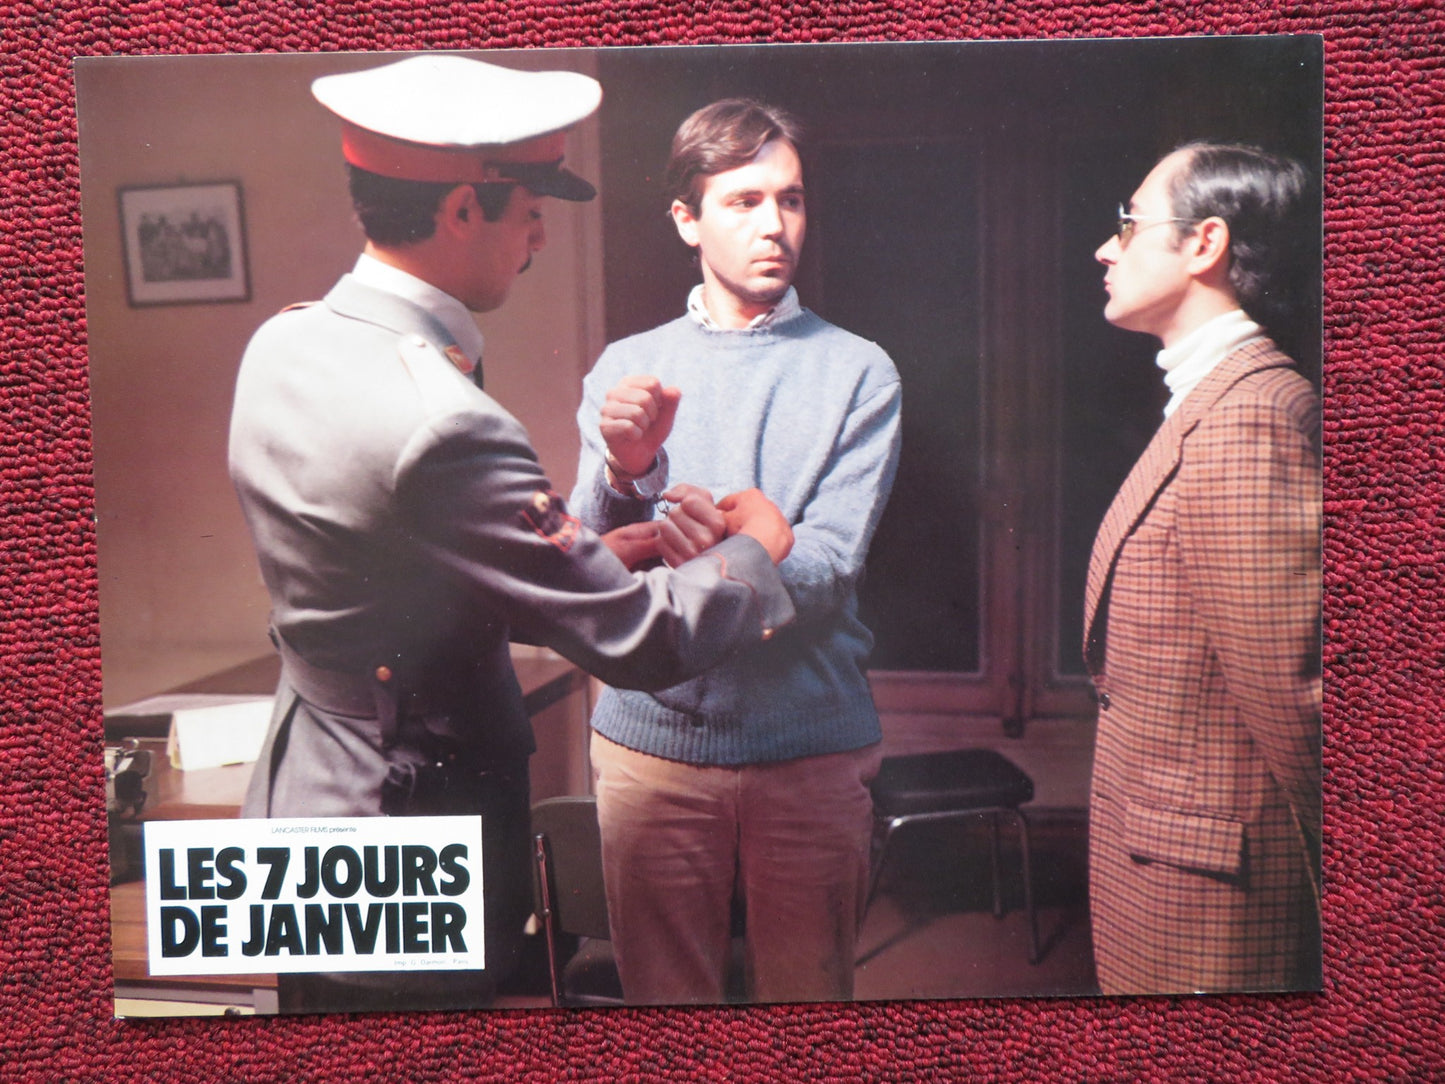 LES 7 JOURS DE JANVIER - E FRENCH LOBBY CARD MANUEL ANGEL EGEA FERNANDO 1979